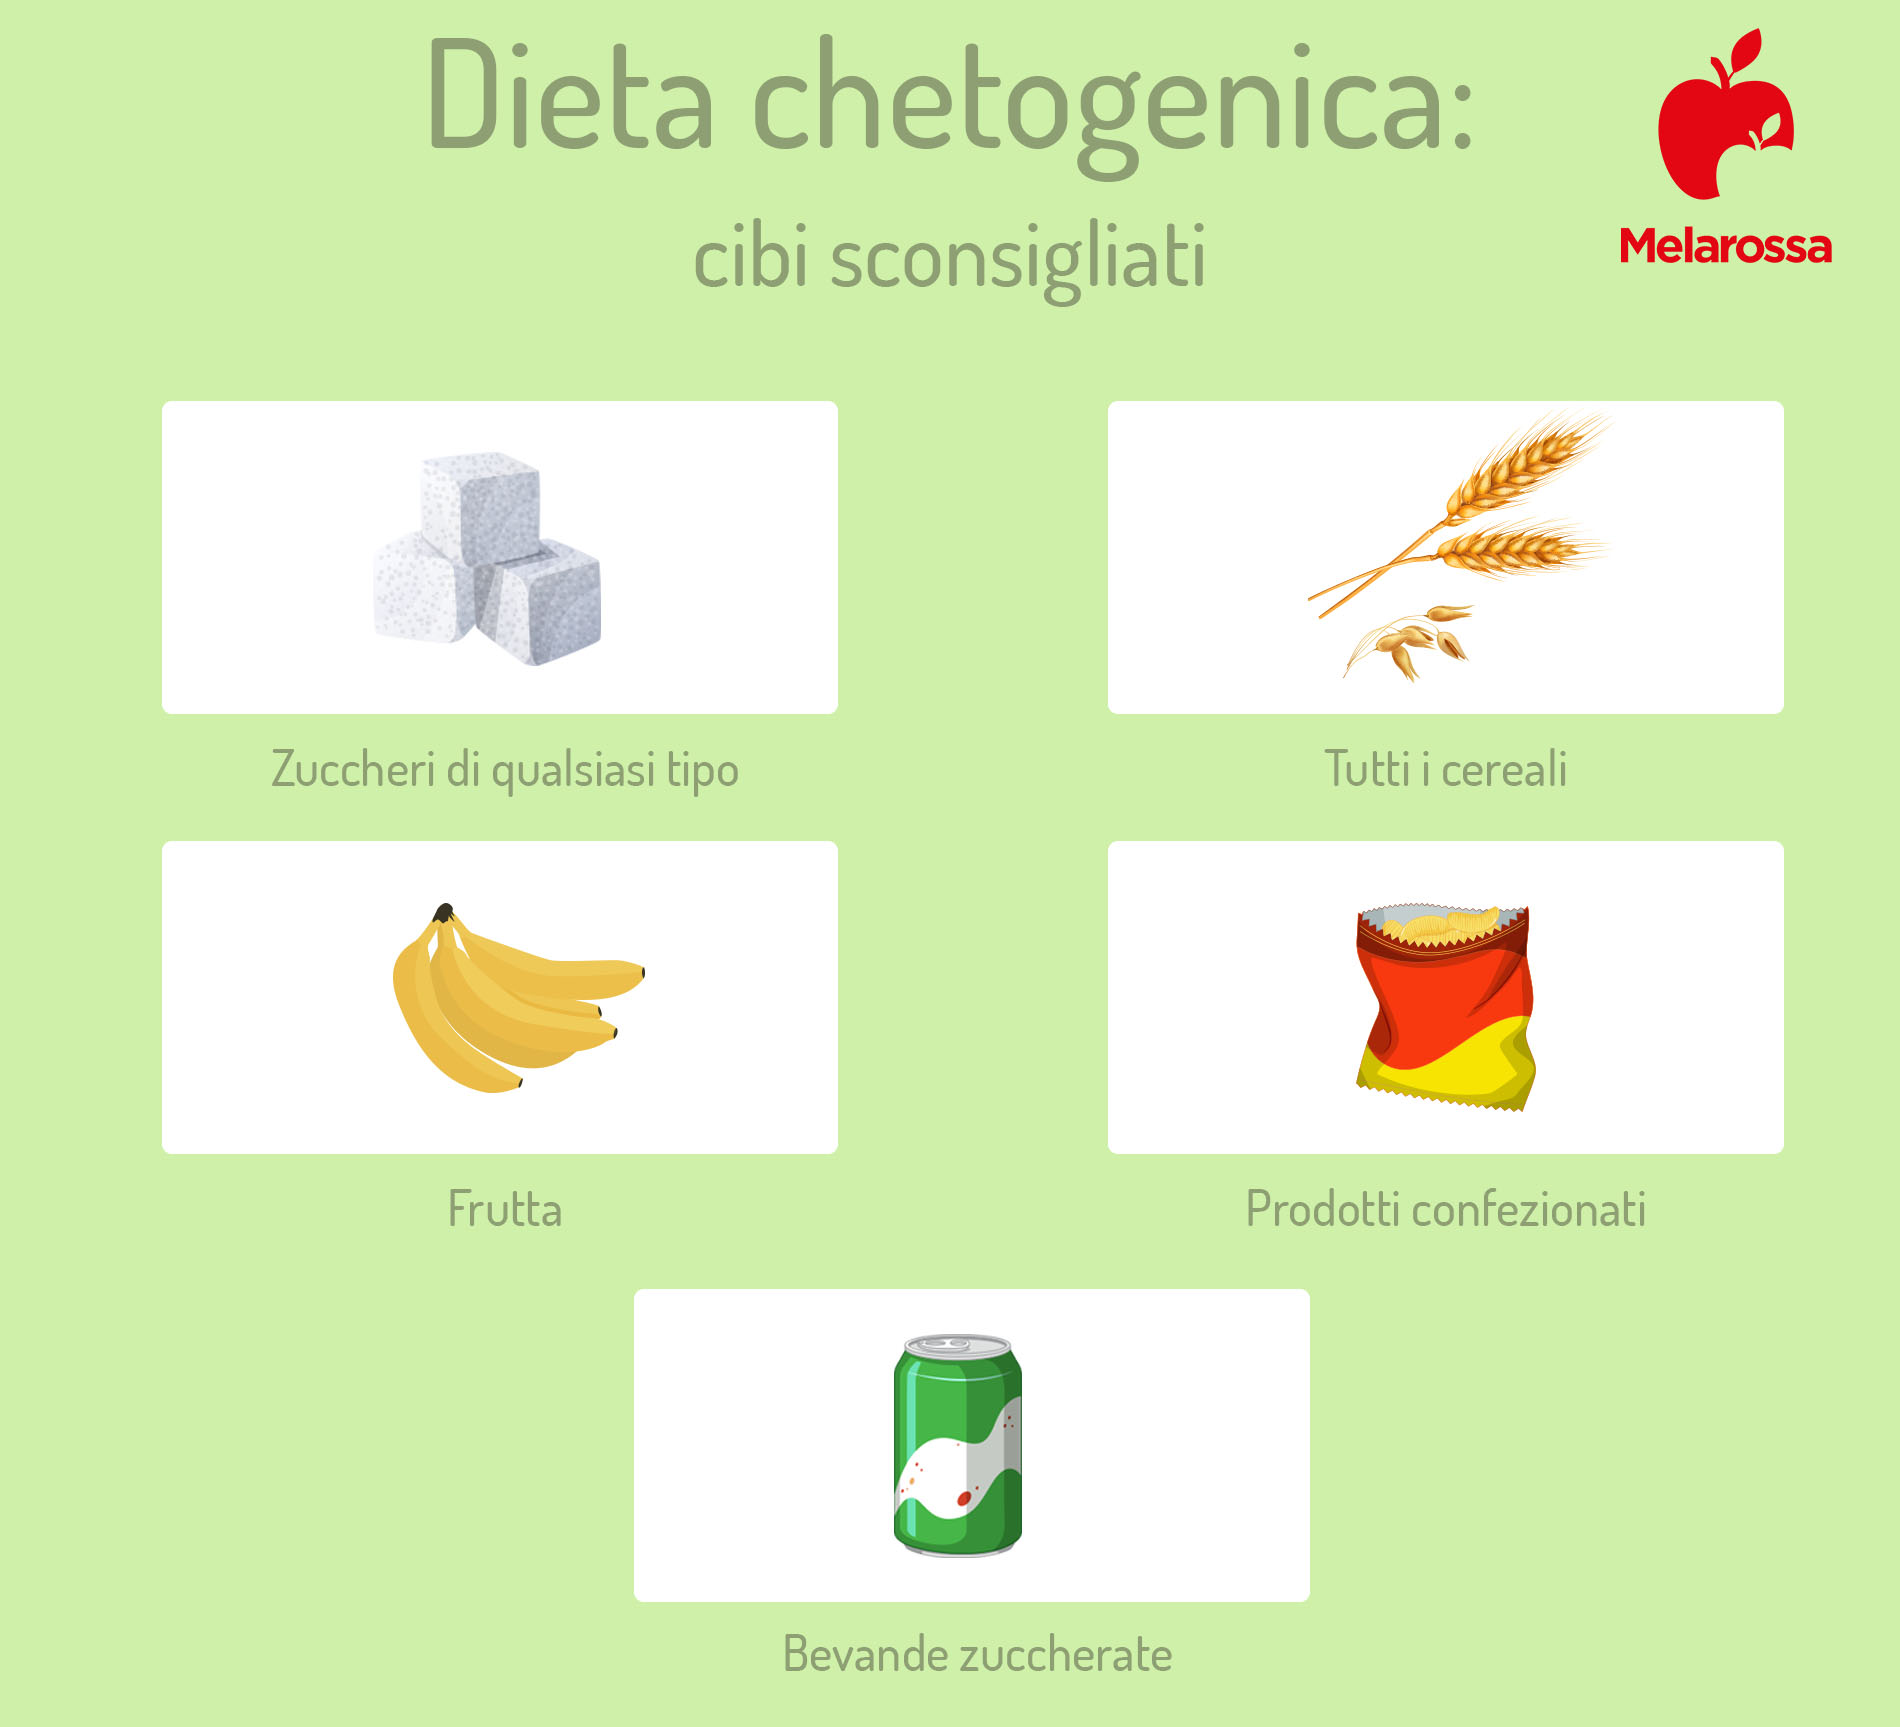 dieta chetogenica: cibi sconsigliati 